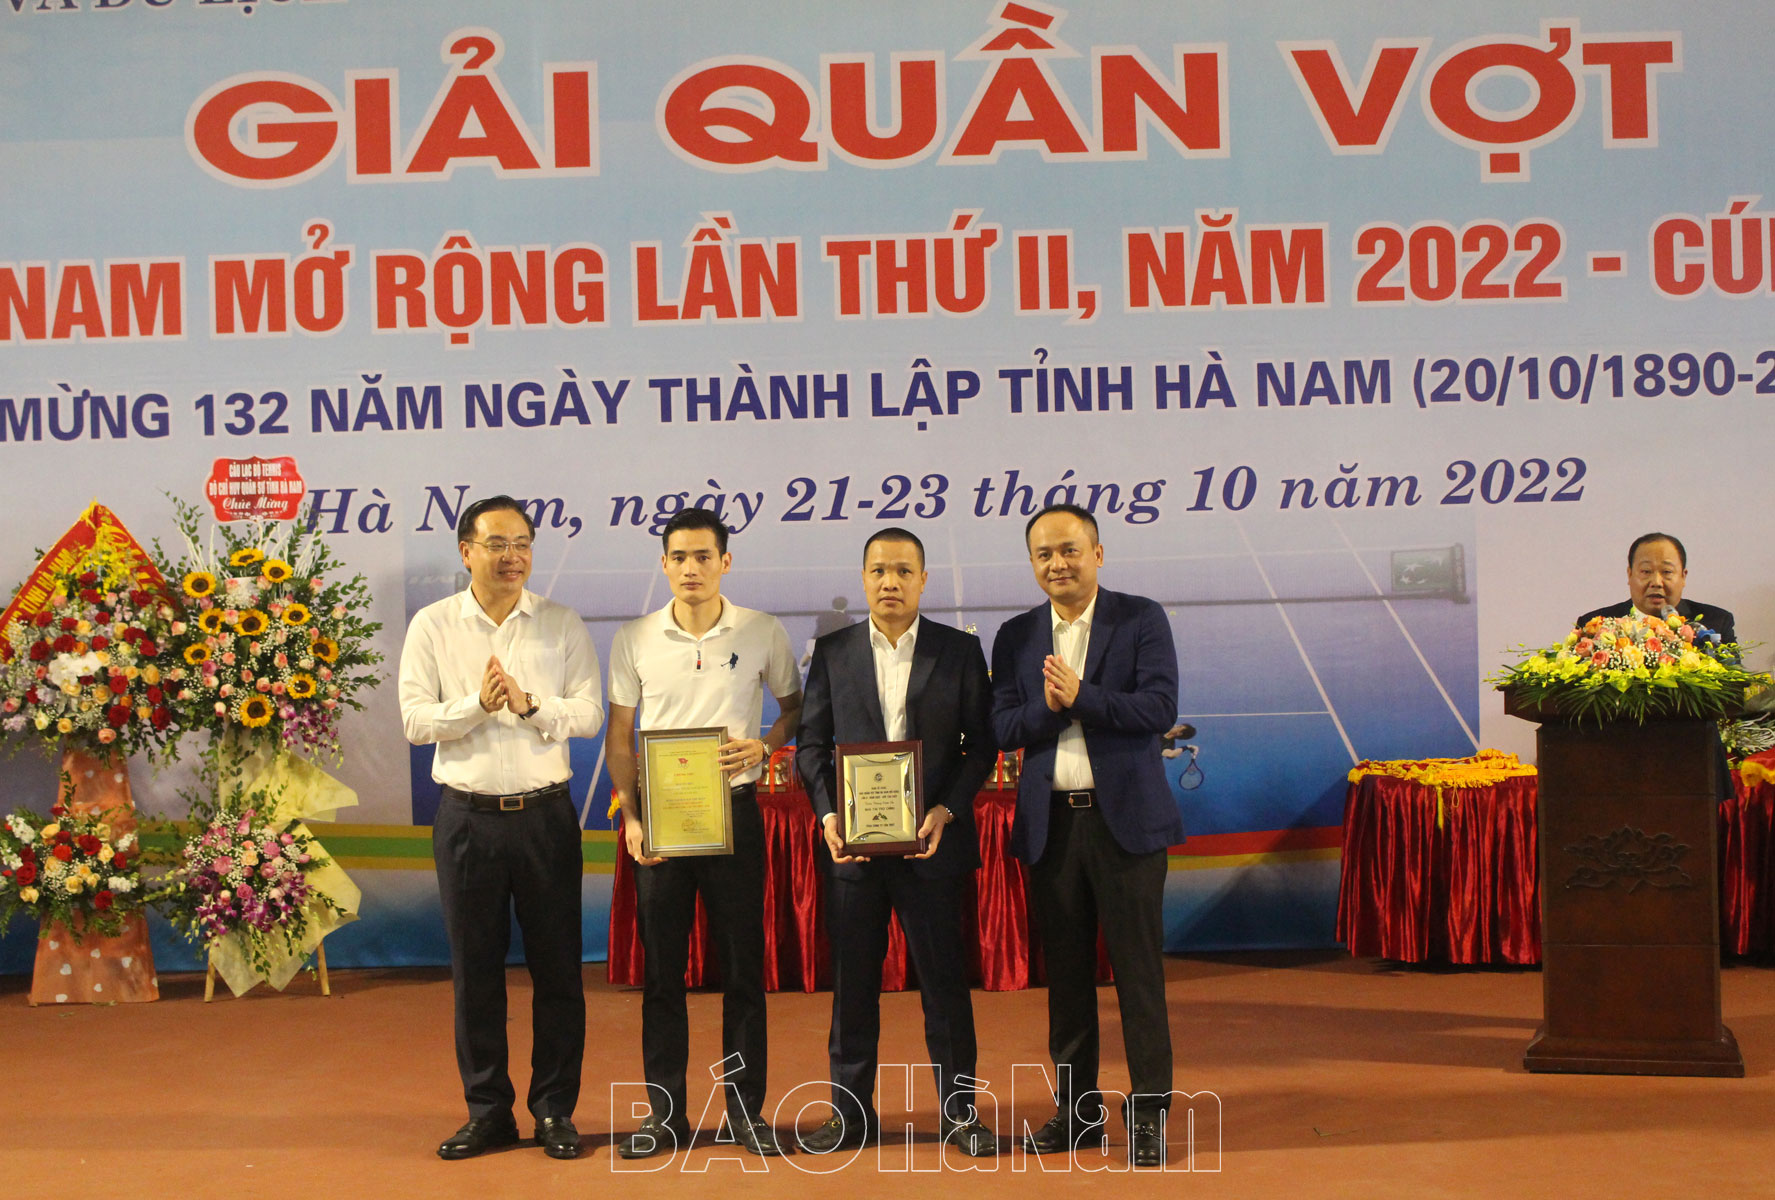 Khai mạc Giải Quần vợt tỉnh Hà Nam mở rộng lần thứ II năm 2022   – Cúp Tân Thủy